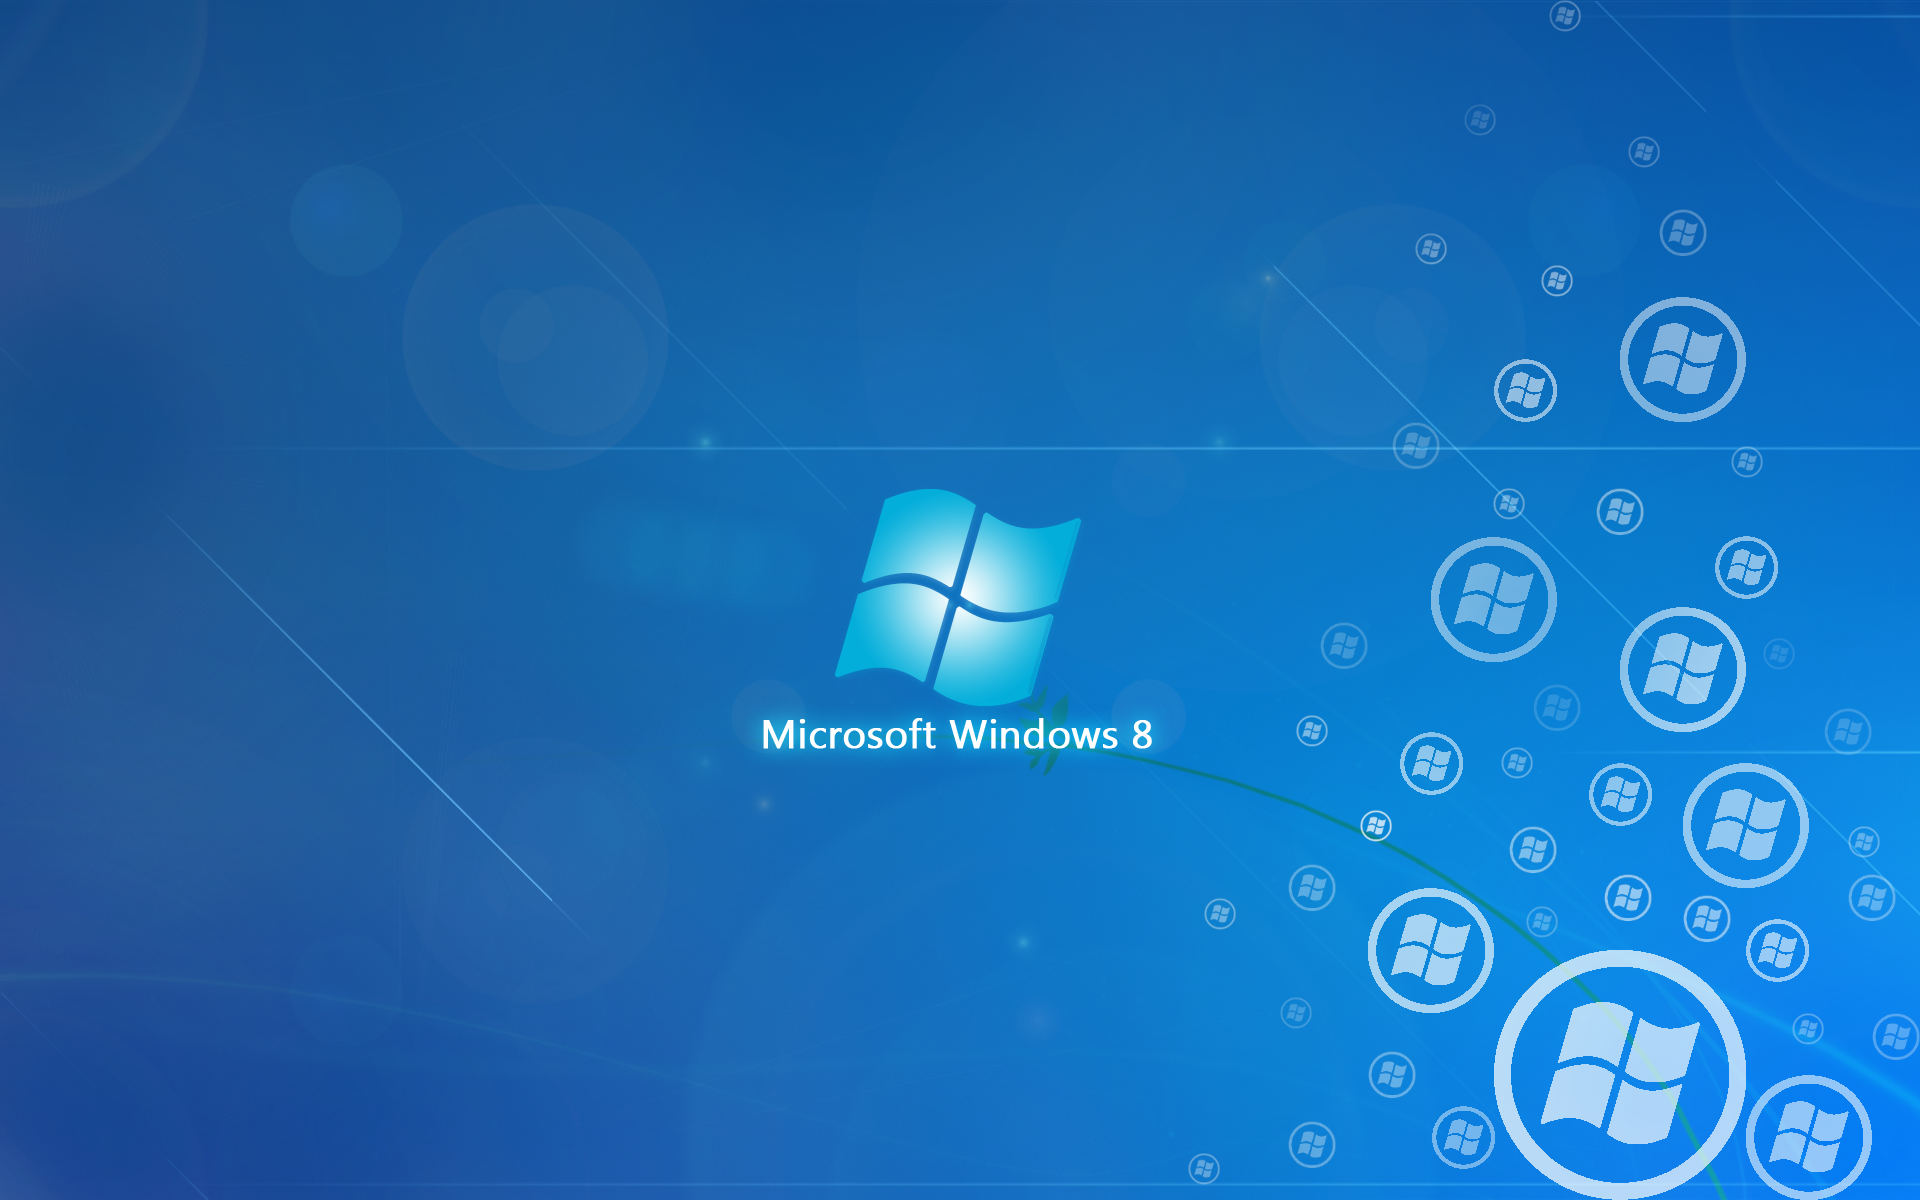 Обои для 8 1. Windows 8 рабочий стол. Изображение виндовс. Картинки на рабочий стол Windows 8. Картинки виндовс 8.